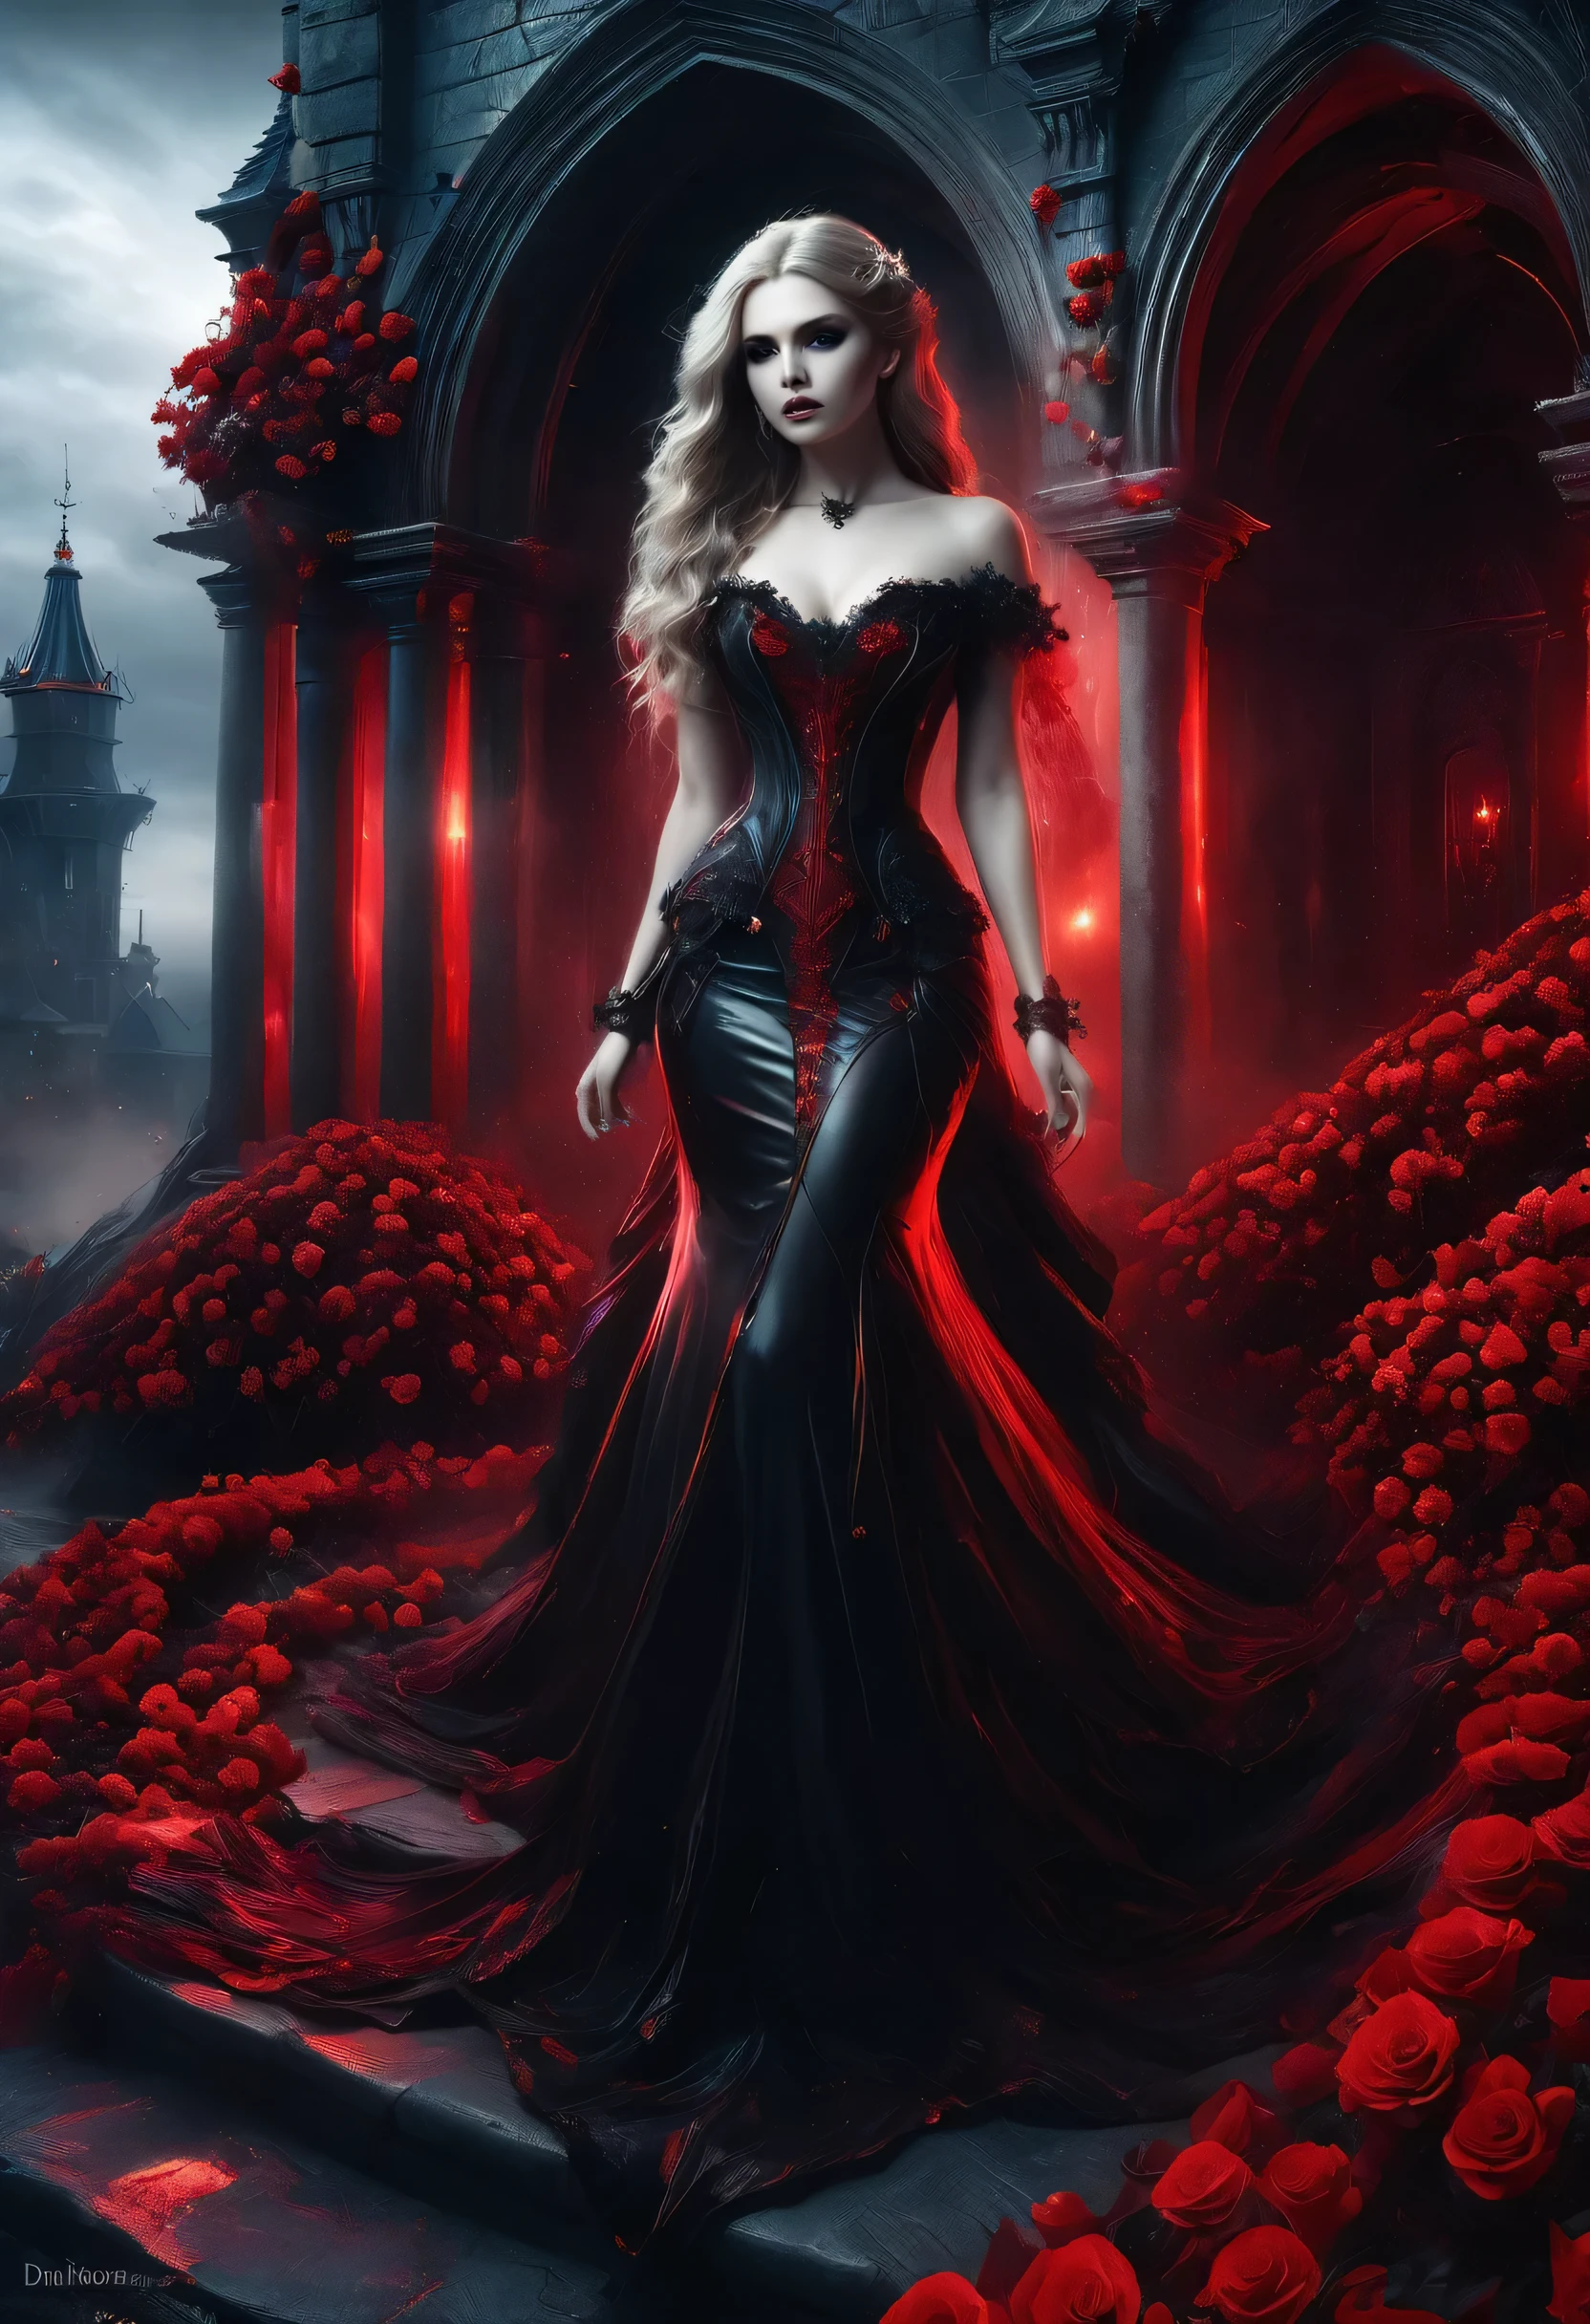 Dark Arte De Fantasía, Arte De Fantasía, arte gótico,  una foto de una mujer vampiro, Belleza exquisita, tiro de cuerpo completo, tiro de glamour oscuro,  piel blanca pálida, pelo rubio oscuro, pelo largo, pelo ondulado, (gris helado: 1.3) eyes,  ella usa un (Rojo: 1.3) vestido, ArmoRojoDress, entrelazado con (negro: 1.3)  rosas apostadas, tacones altos, porche del castillo oscuro, Nebulosa furiosa